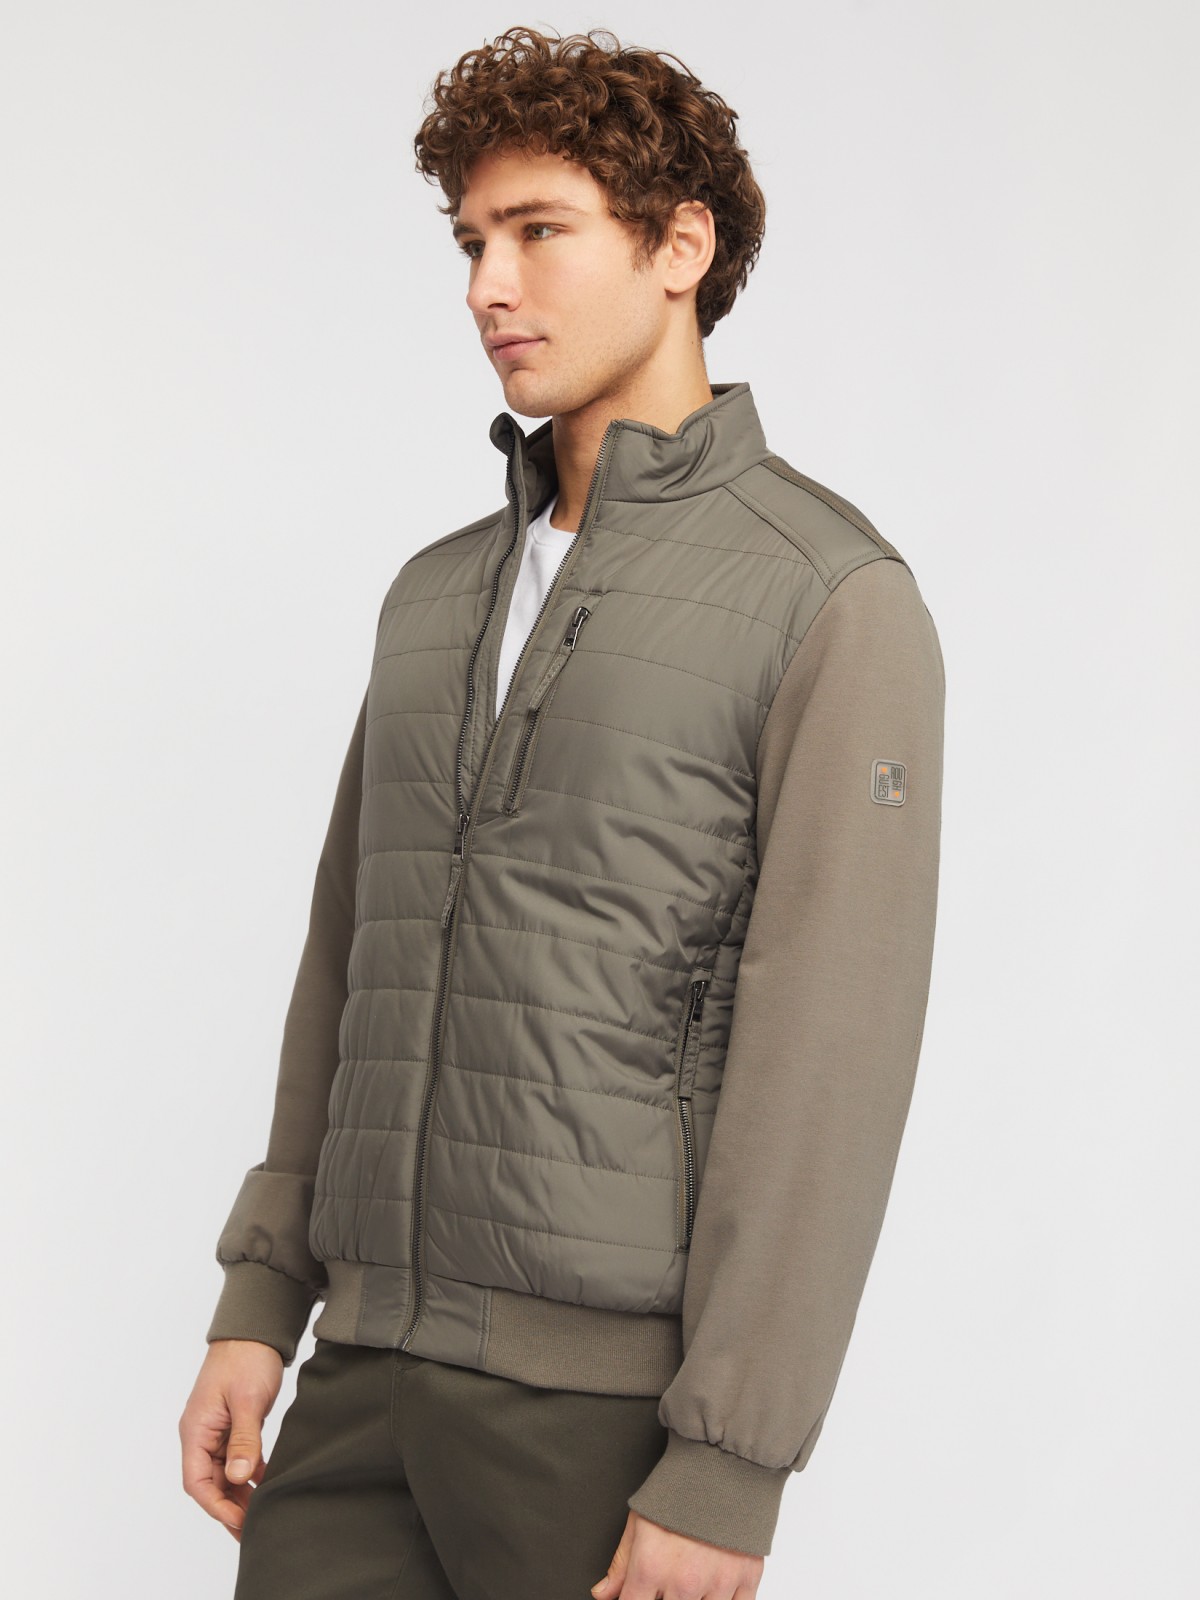 Утеплённая куртка-толстовка с воротником-стойкой zolla 014135102074, цвет хаки, размер S - фото 4